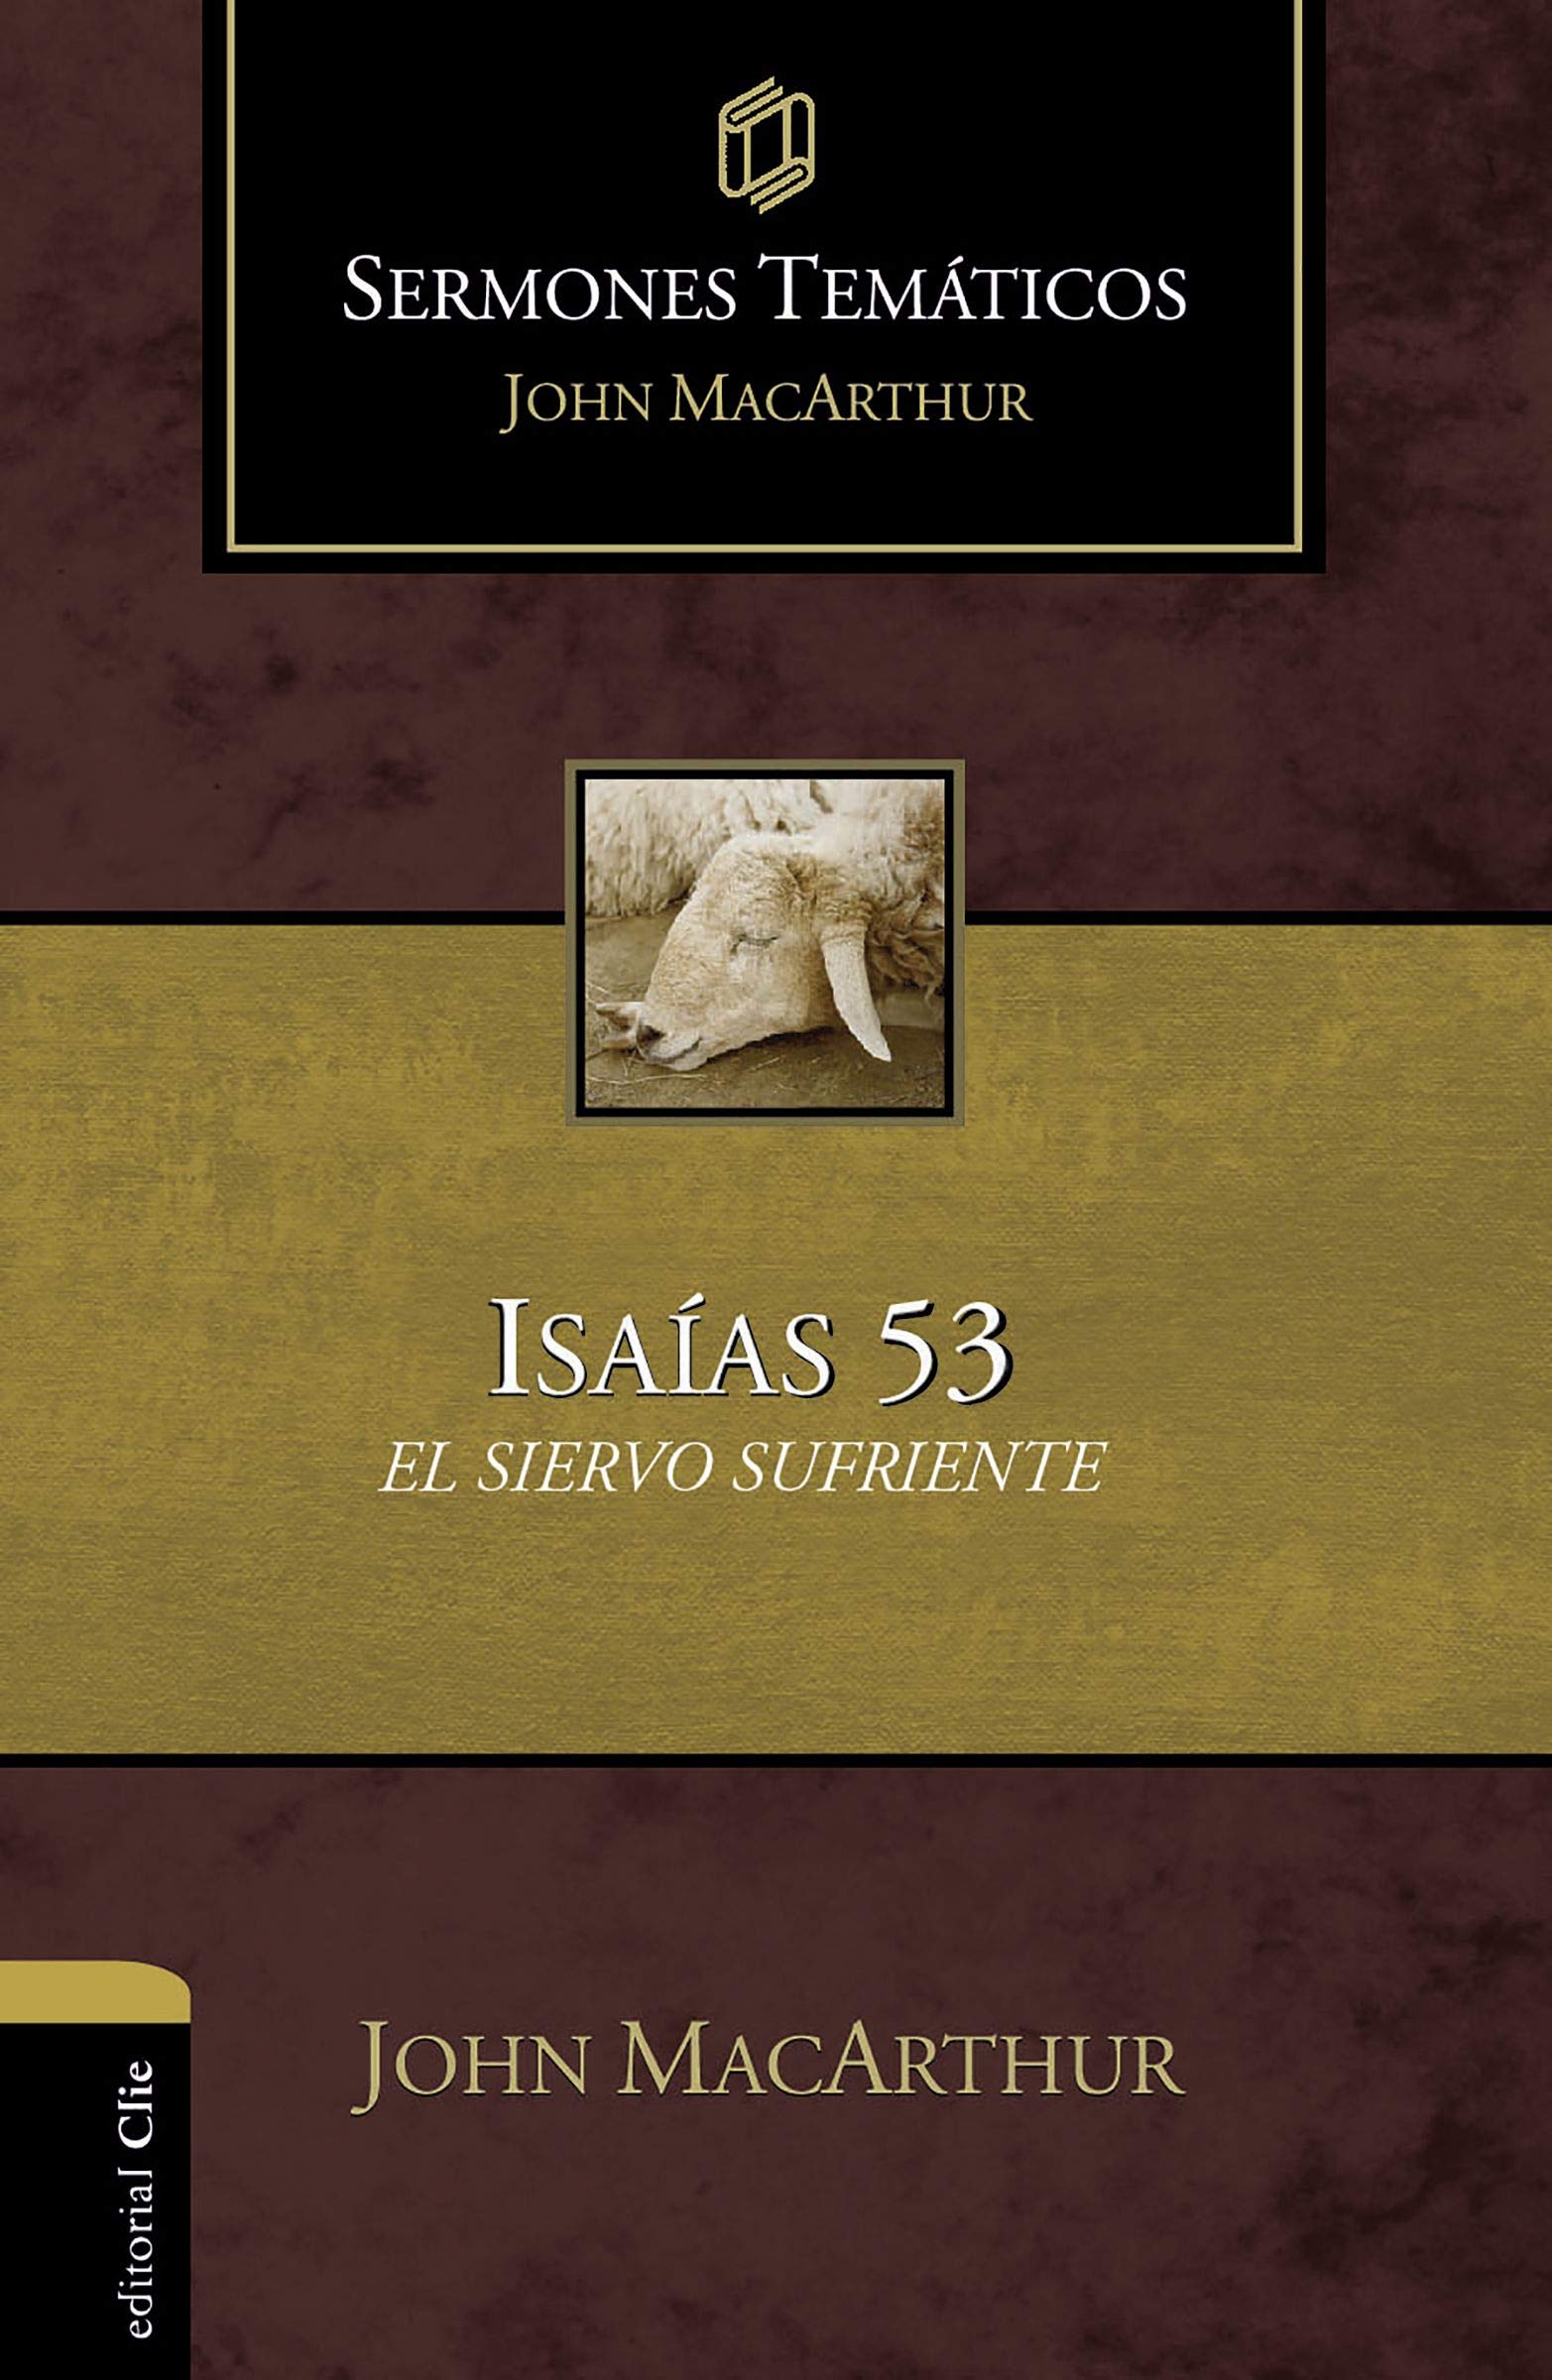 Sermones Temáticos: Isaias 53